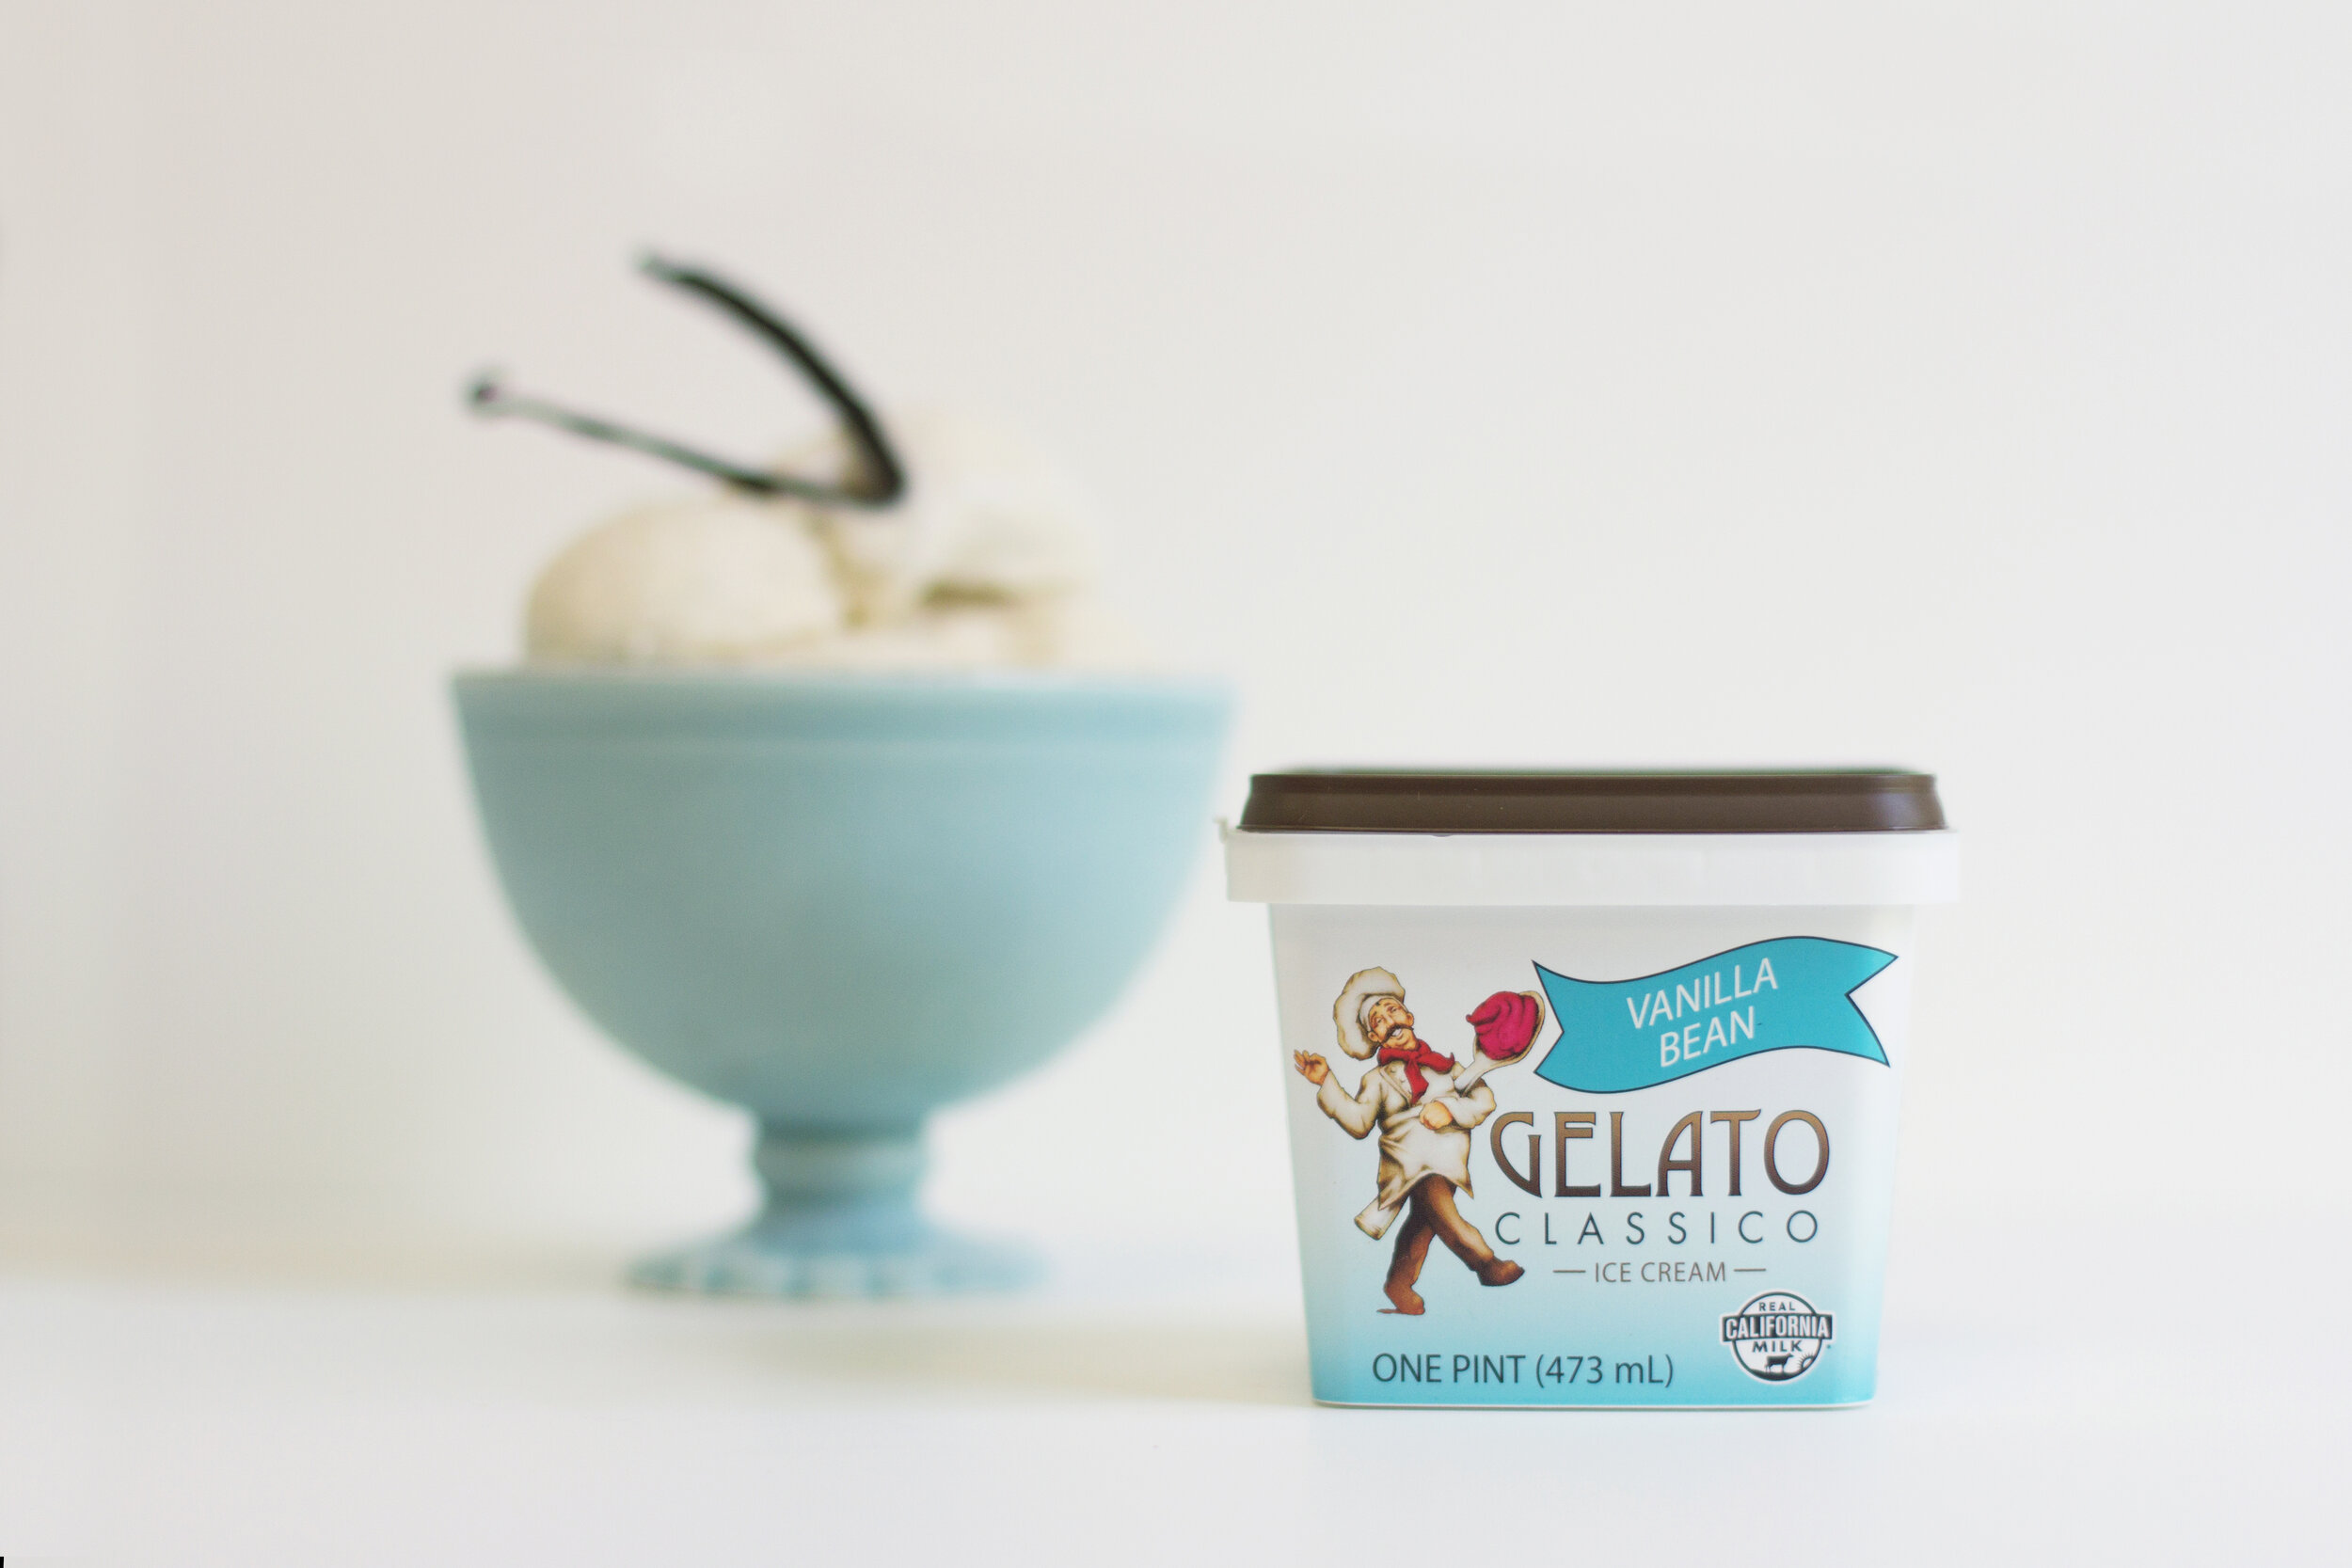 Vanilla Bean Gelato from Gelato Classico